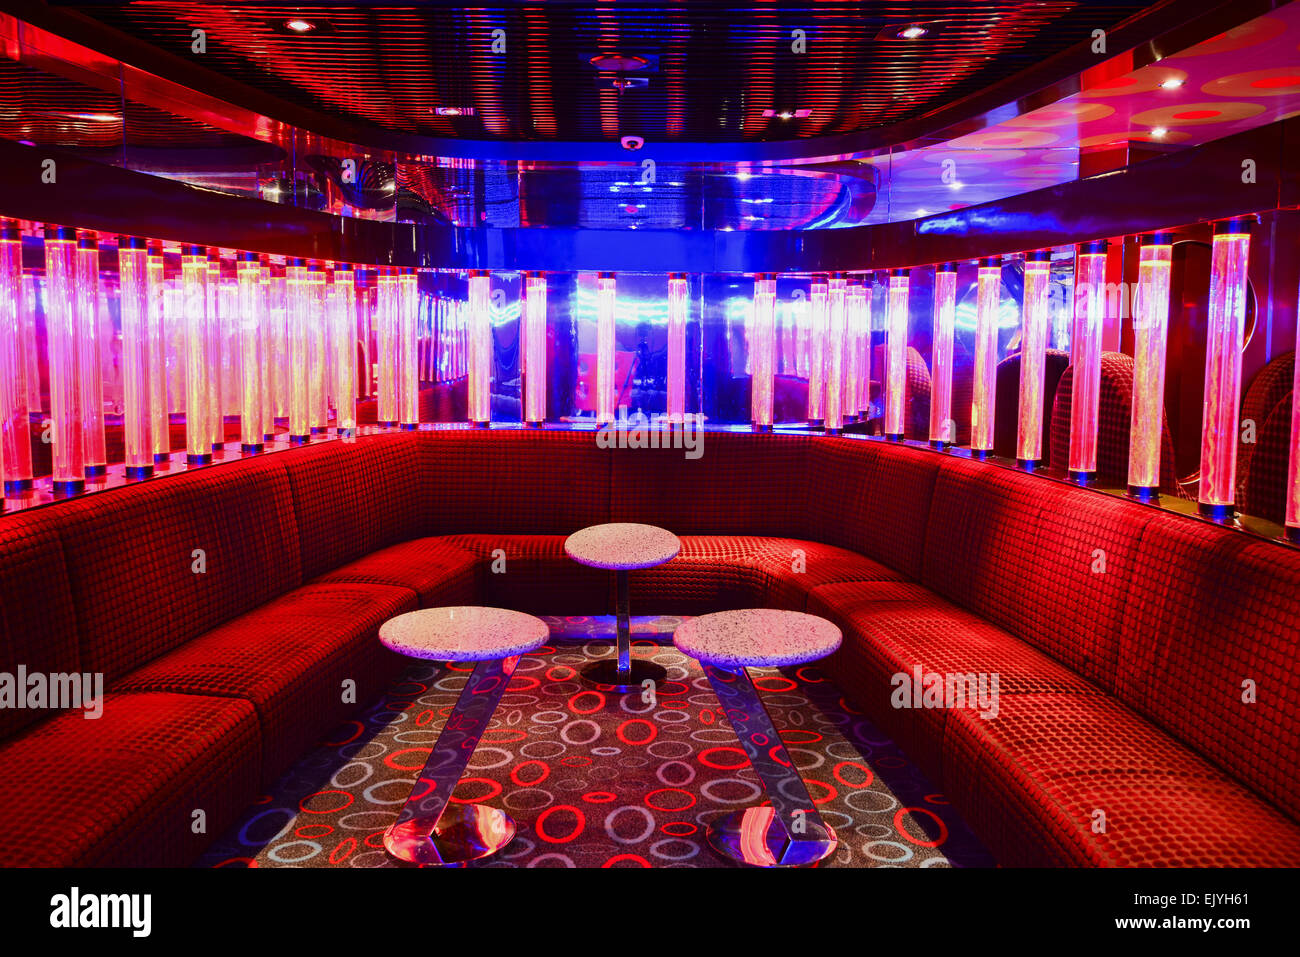 Red VIP club interior with beautifull lighting Stock Photo